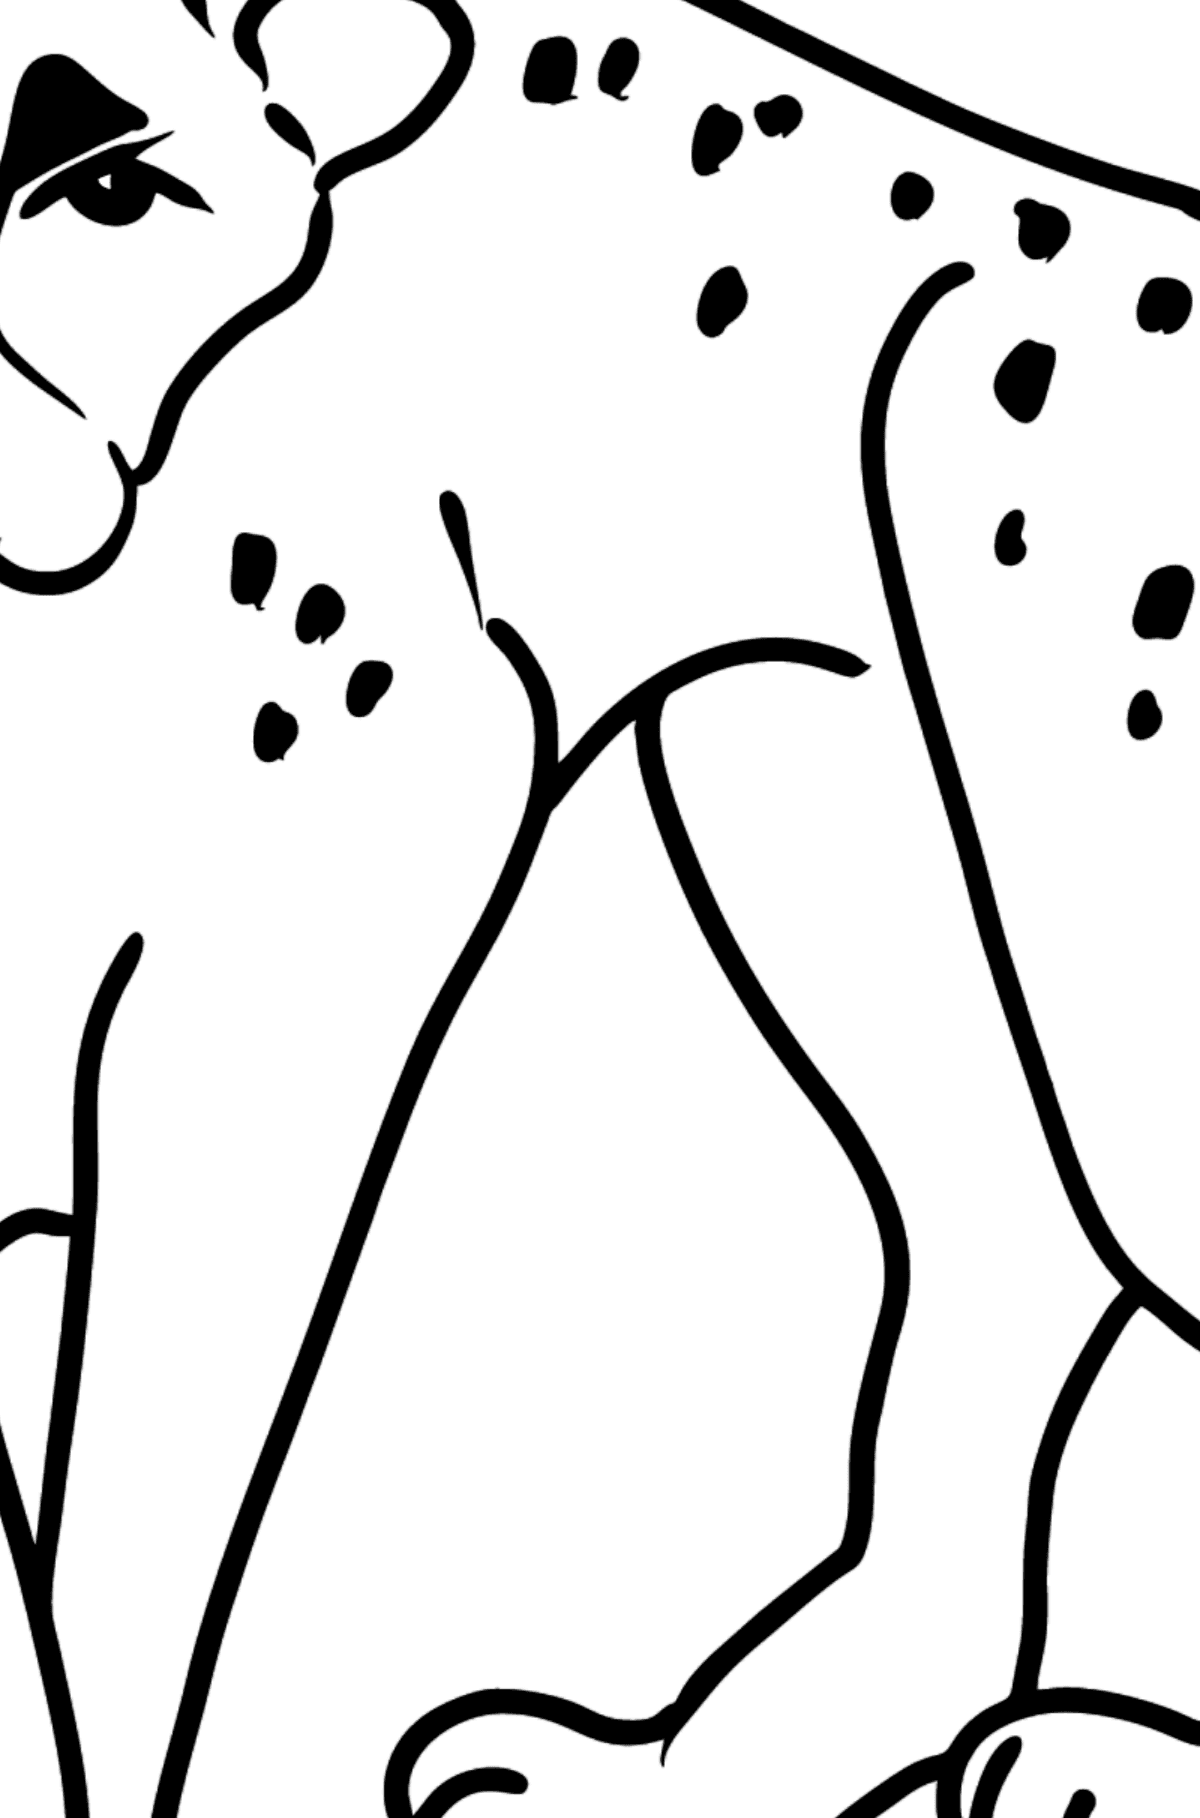 Omalovánka Gepard - Omalovánka podle Geometrických tvarů pro děti